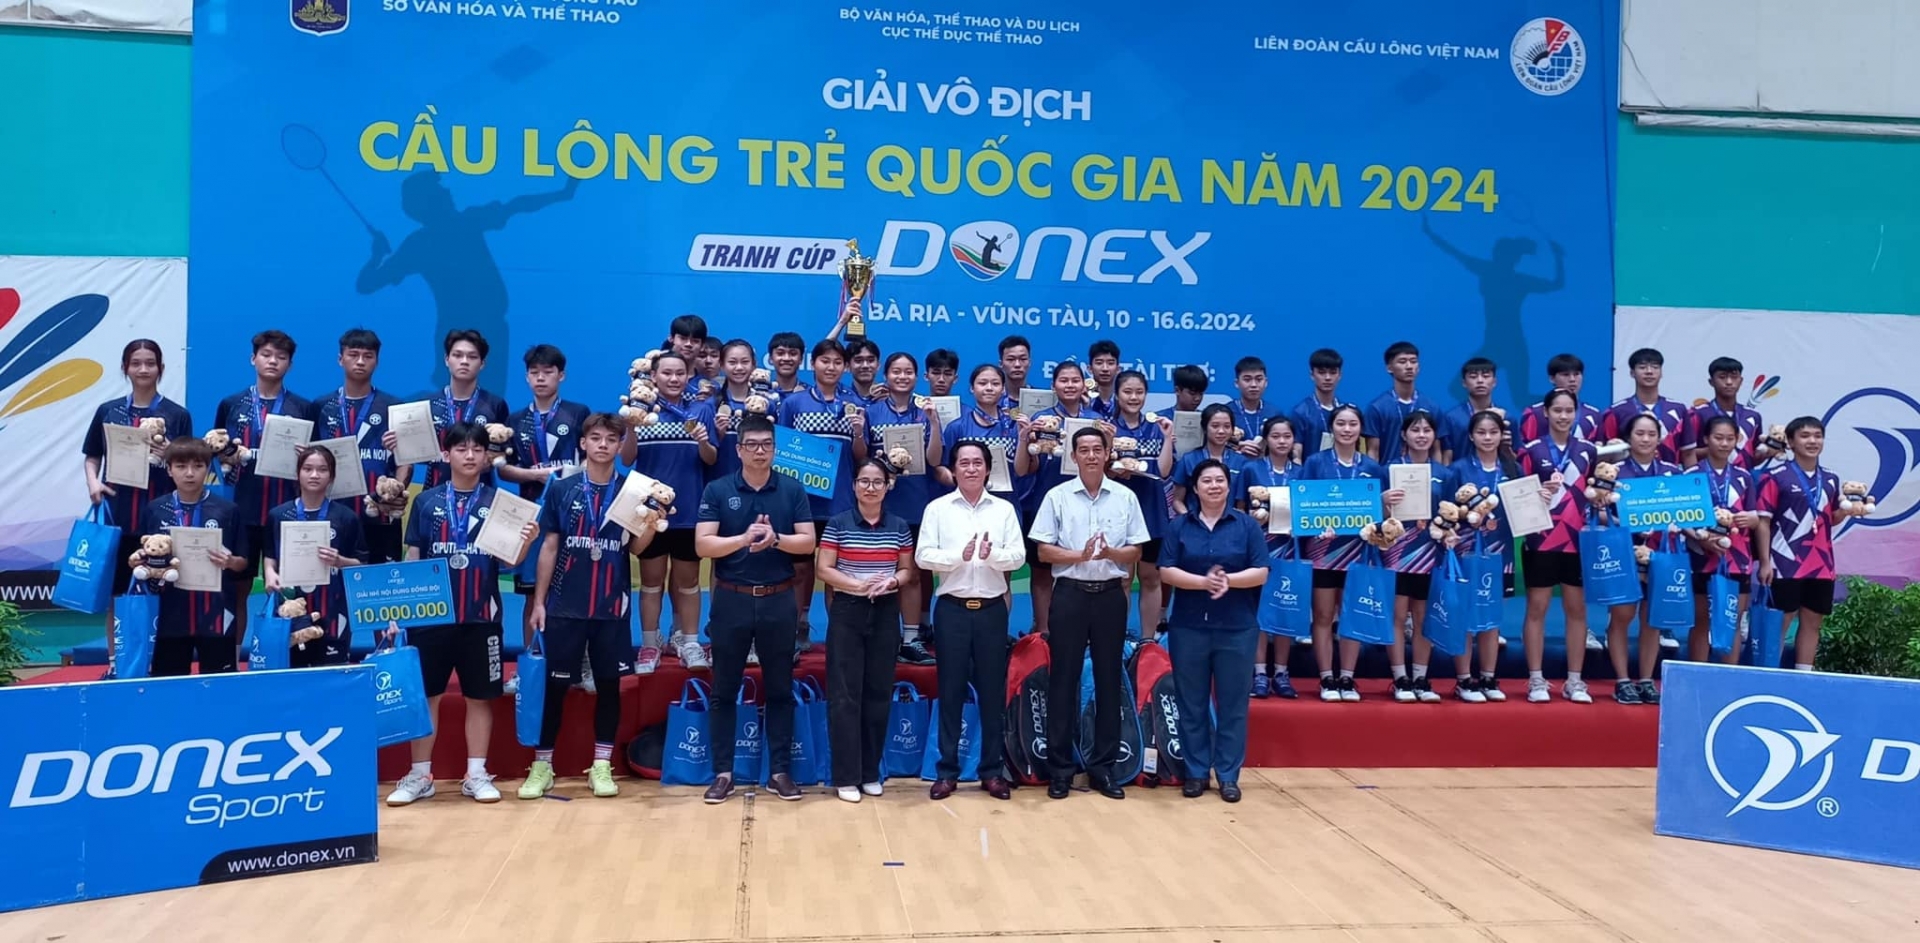 Đội tuyển Cầu lông Lâm Đồng giành HCĐ nội dung đồng đội hỗn hợp. 